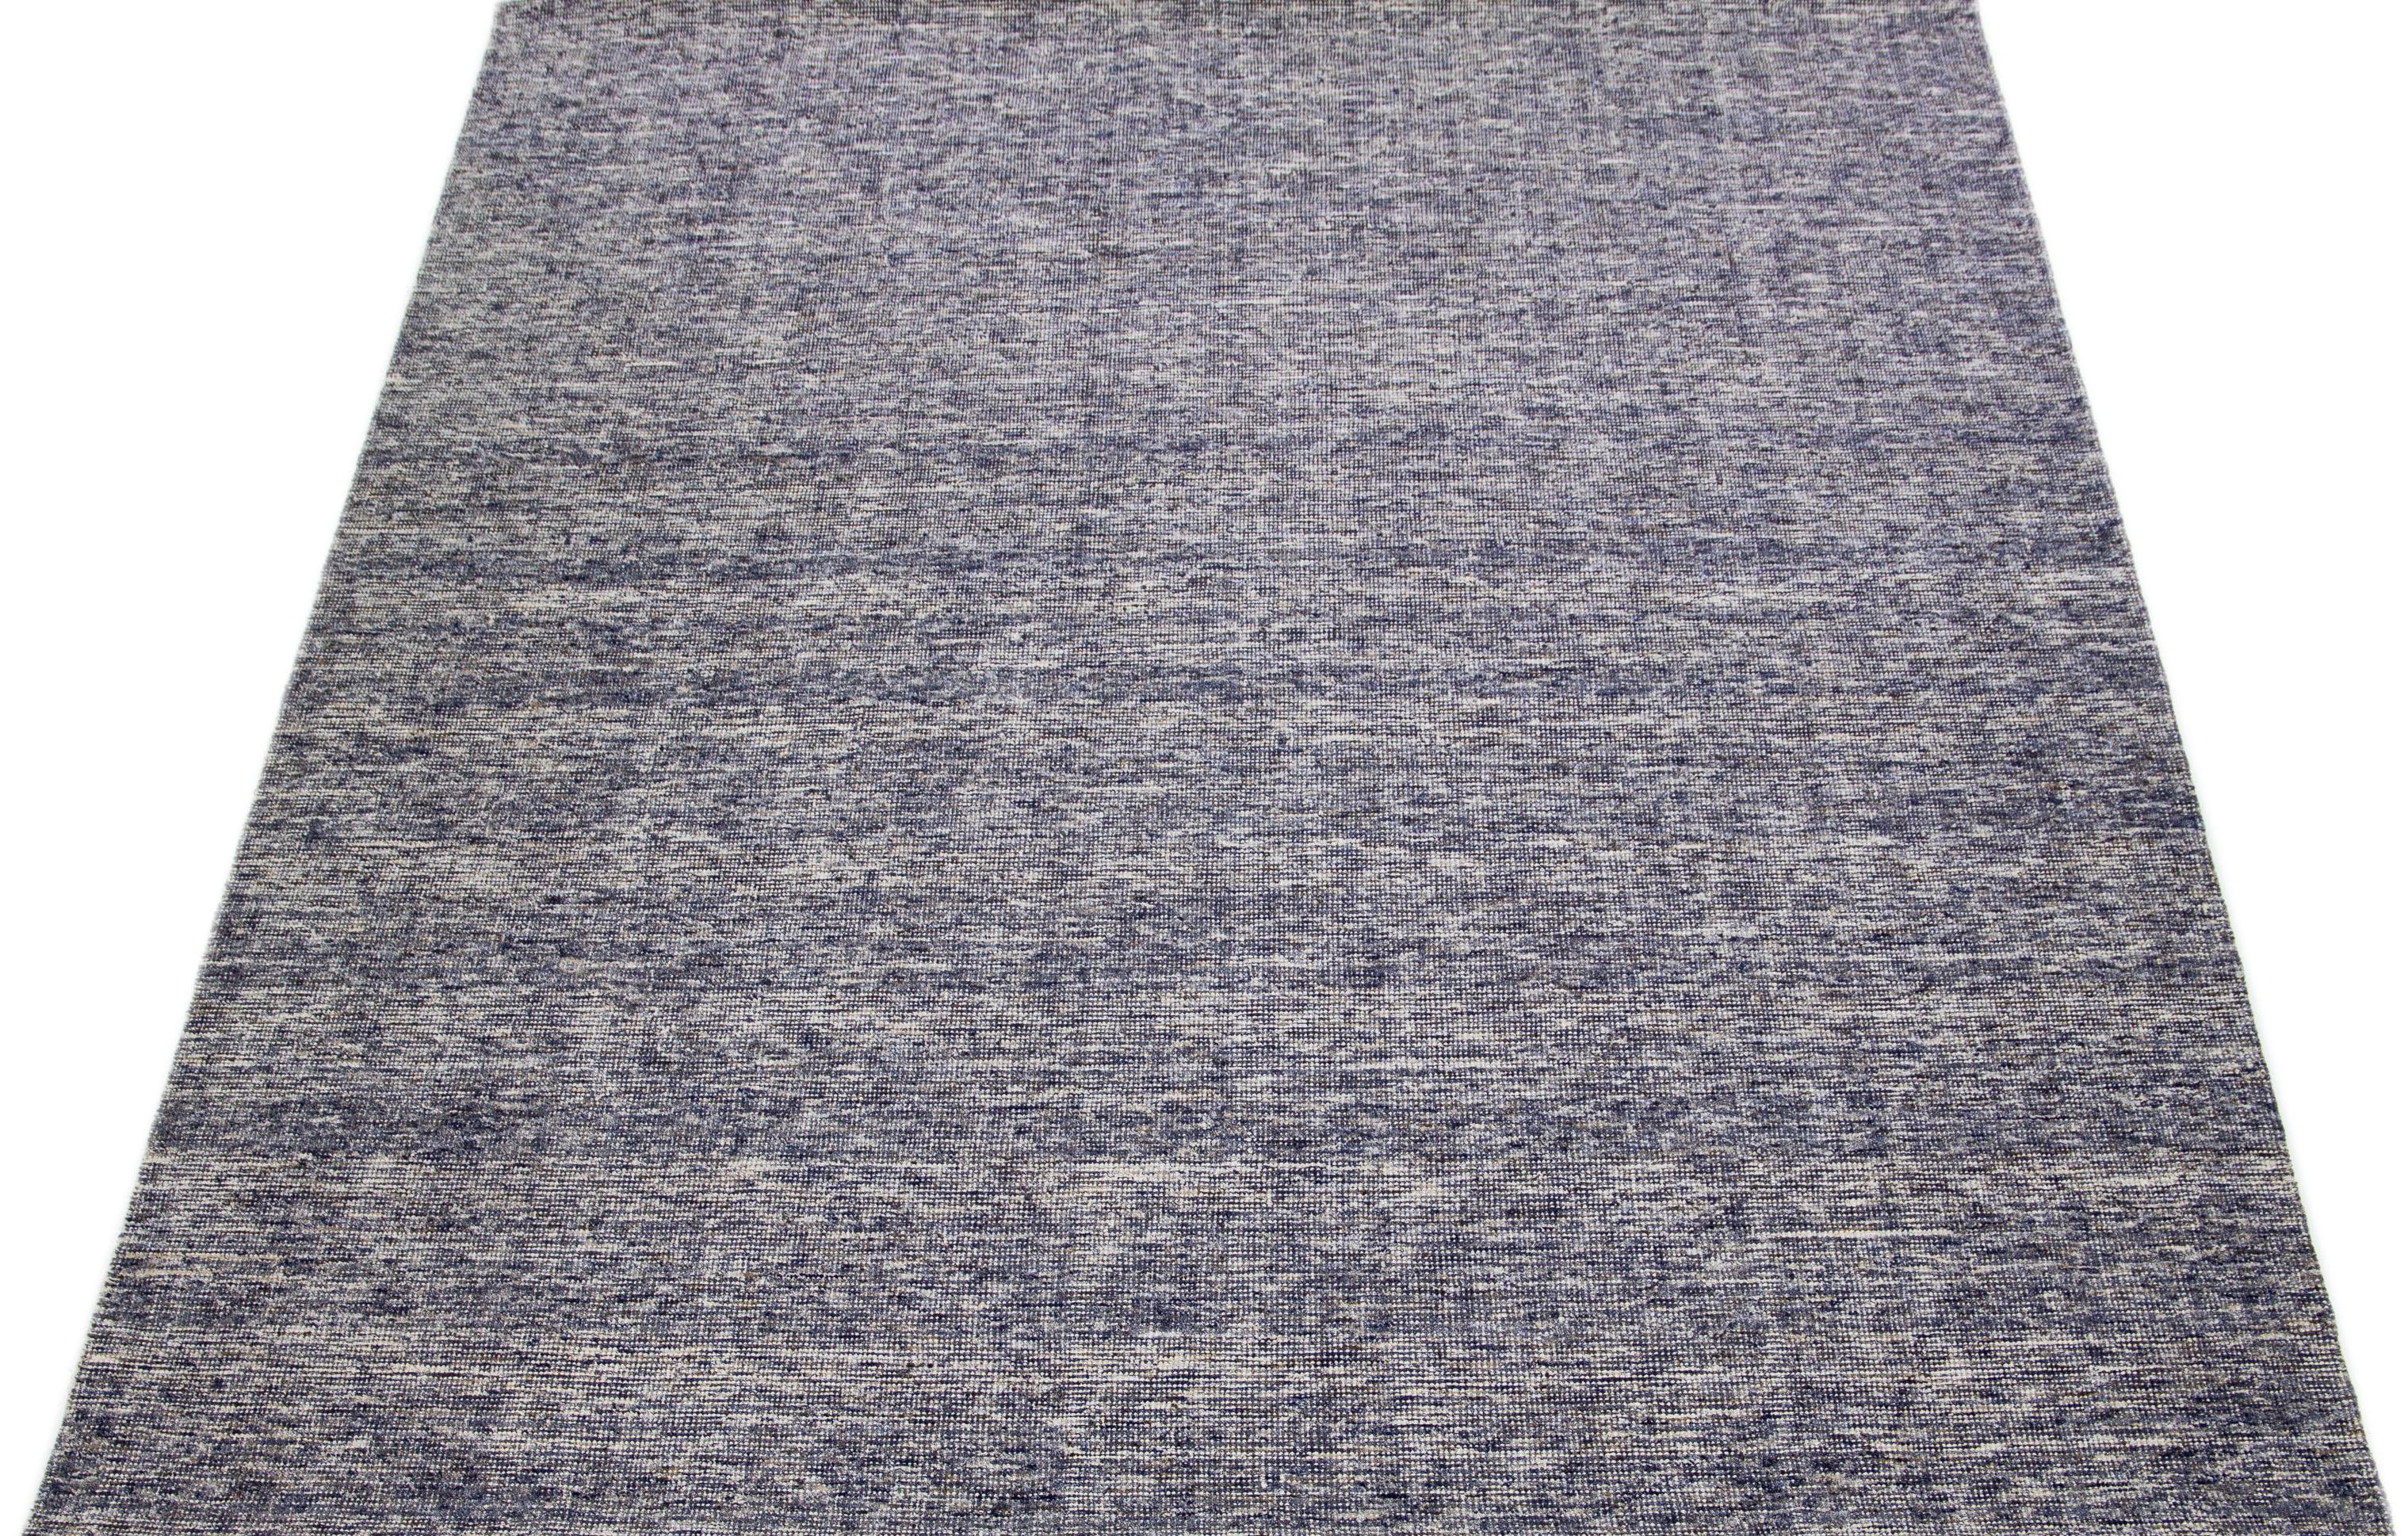 Magnifique tapis indien en bambou, soie et laine, fait à la main par Apadana, avec un champ bleu. Ce tapis de la collection Groove présente un design all-over.

Ce tapis mesure 9'3